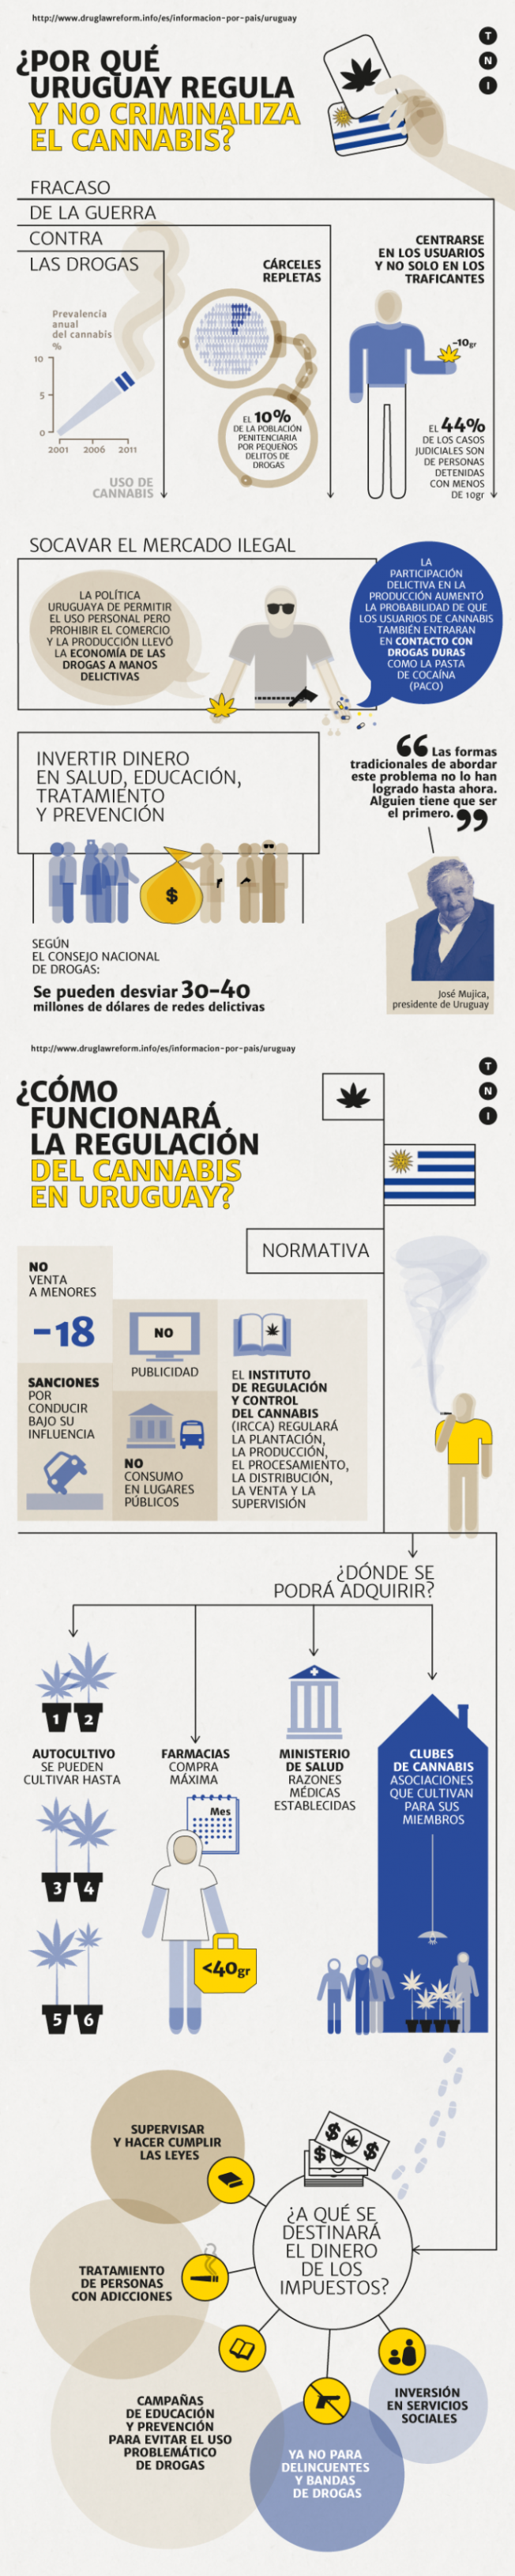 A  HISTÓRIA DA LEGALIZAÇÃO DA CANNABIS NO URUGUAI